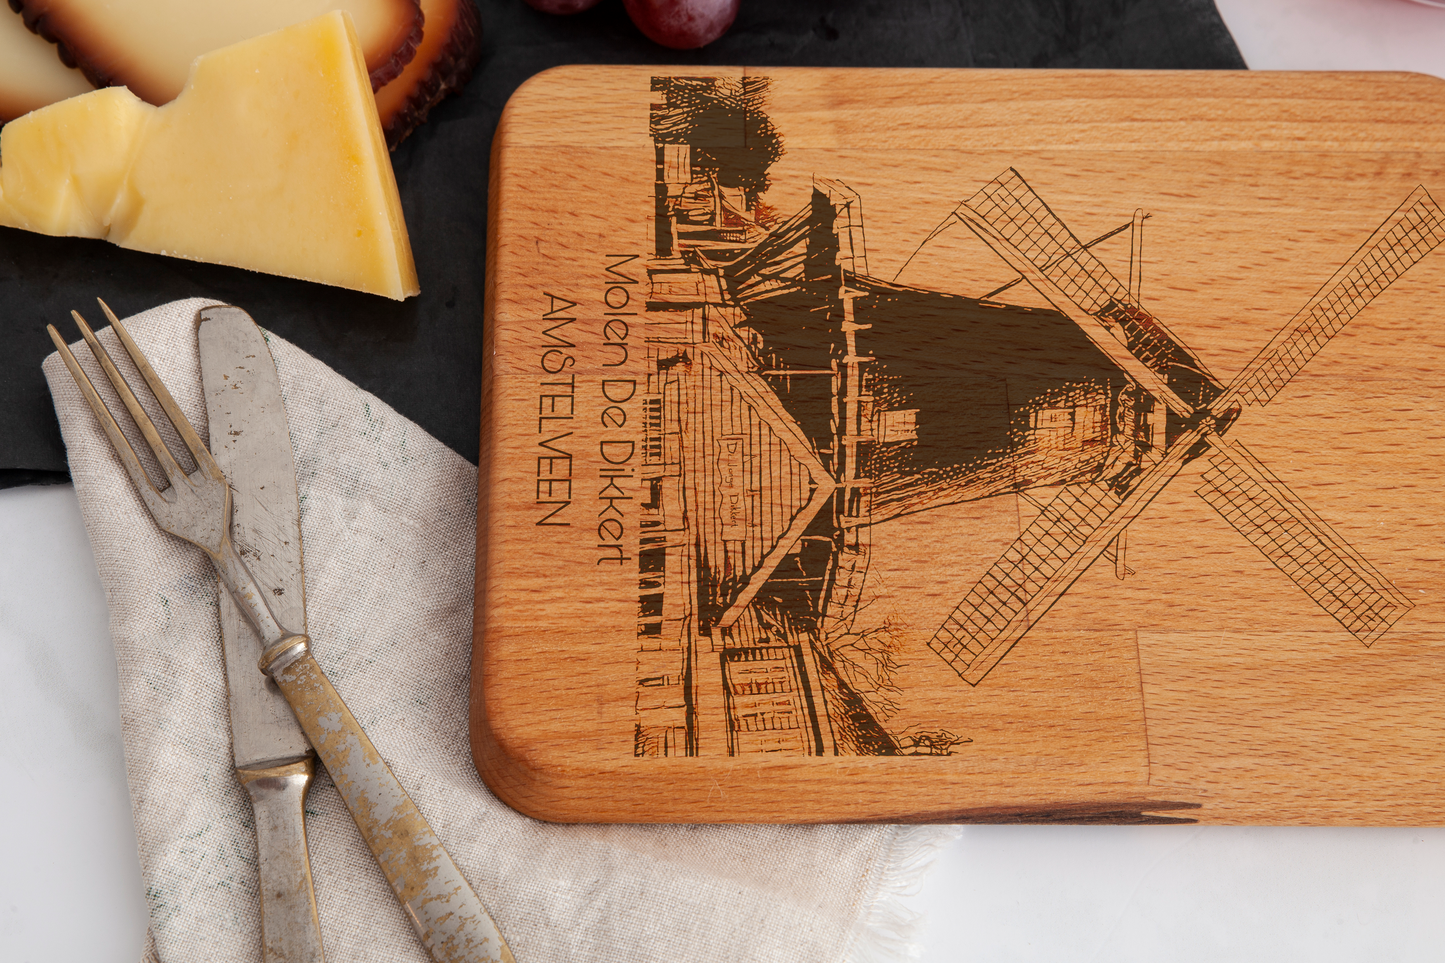 Amstelveen, Molen De Dikkert, cheese board, wood grain